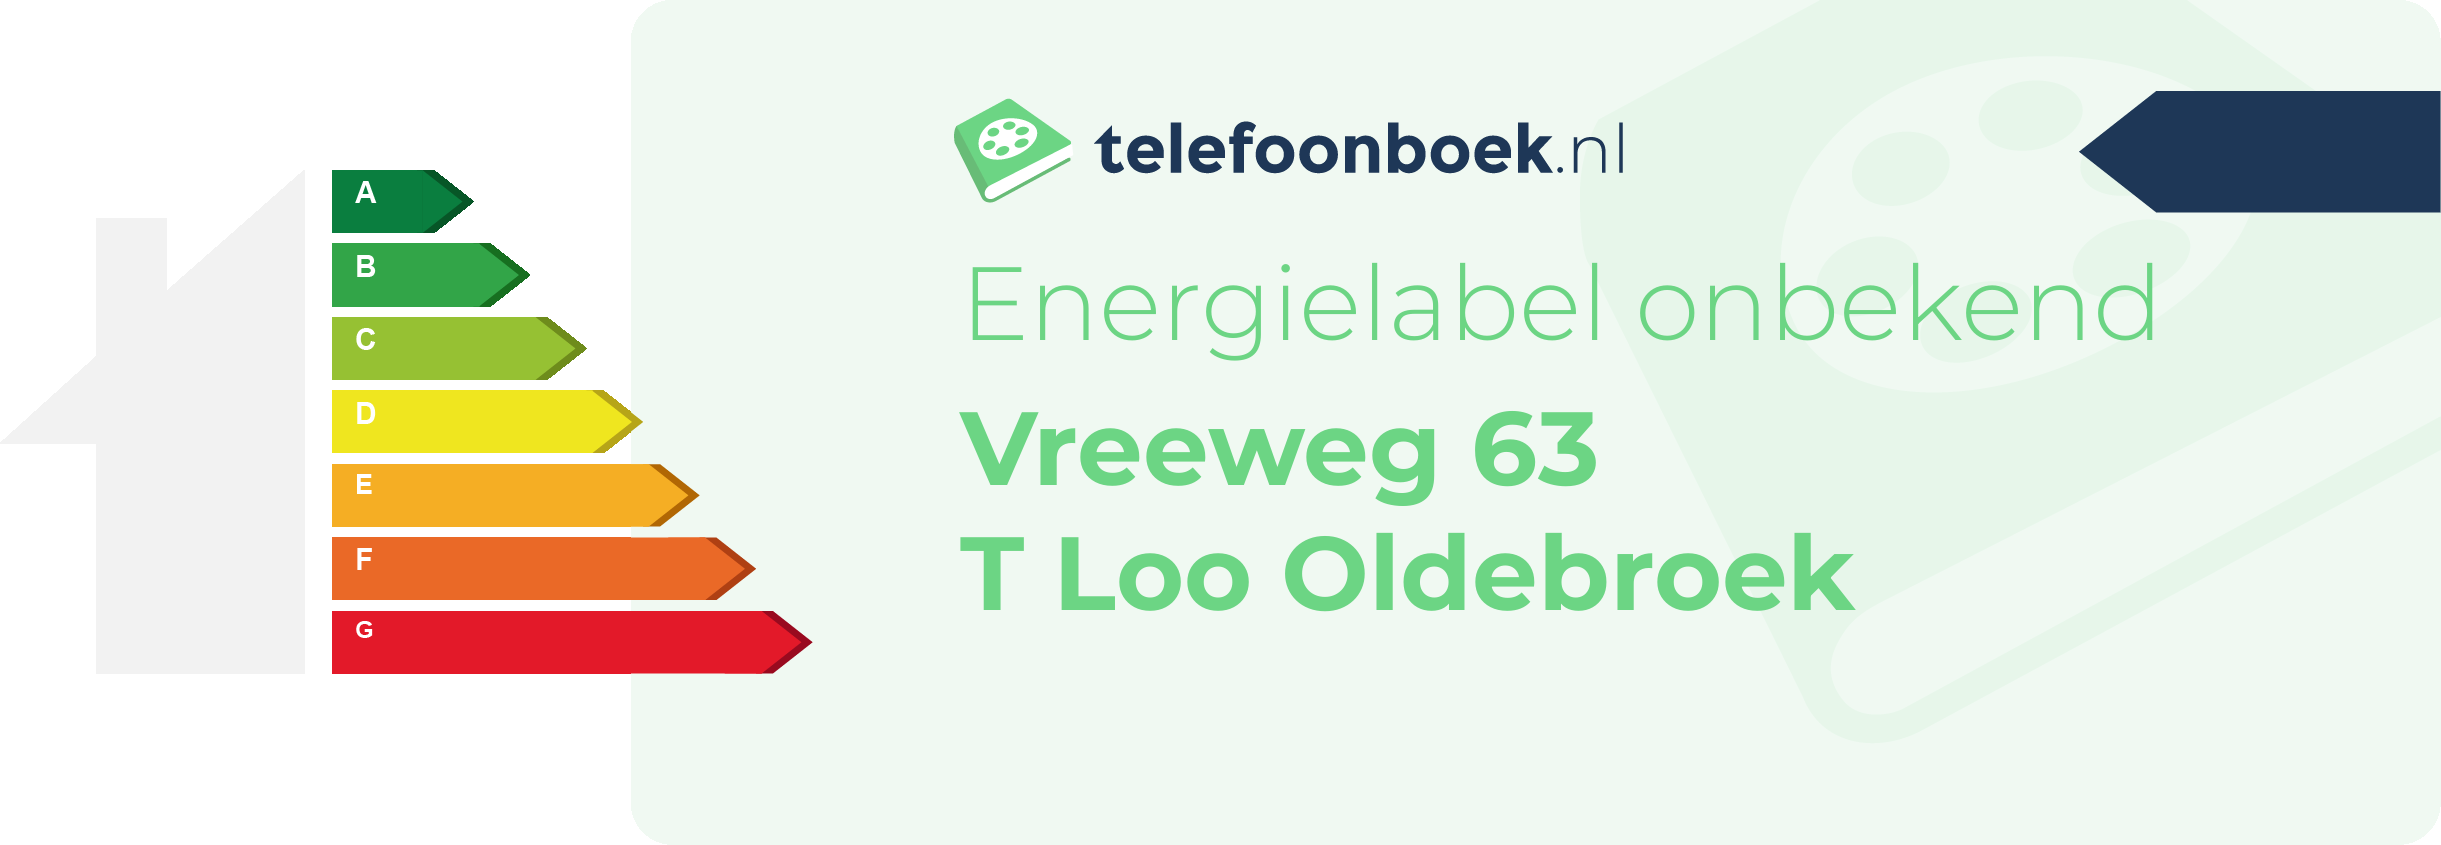 Energielabel Vreeweg 63 T Loo Oldebroek